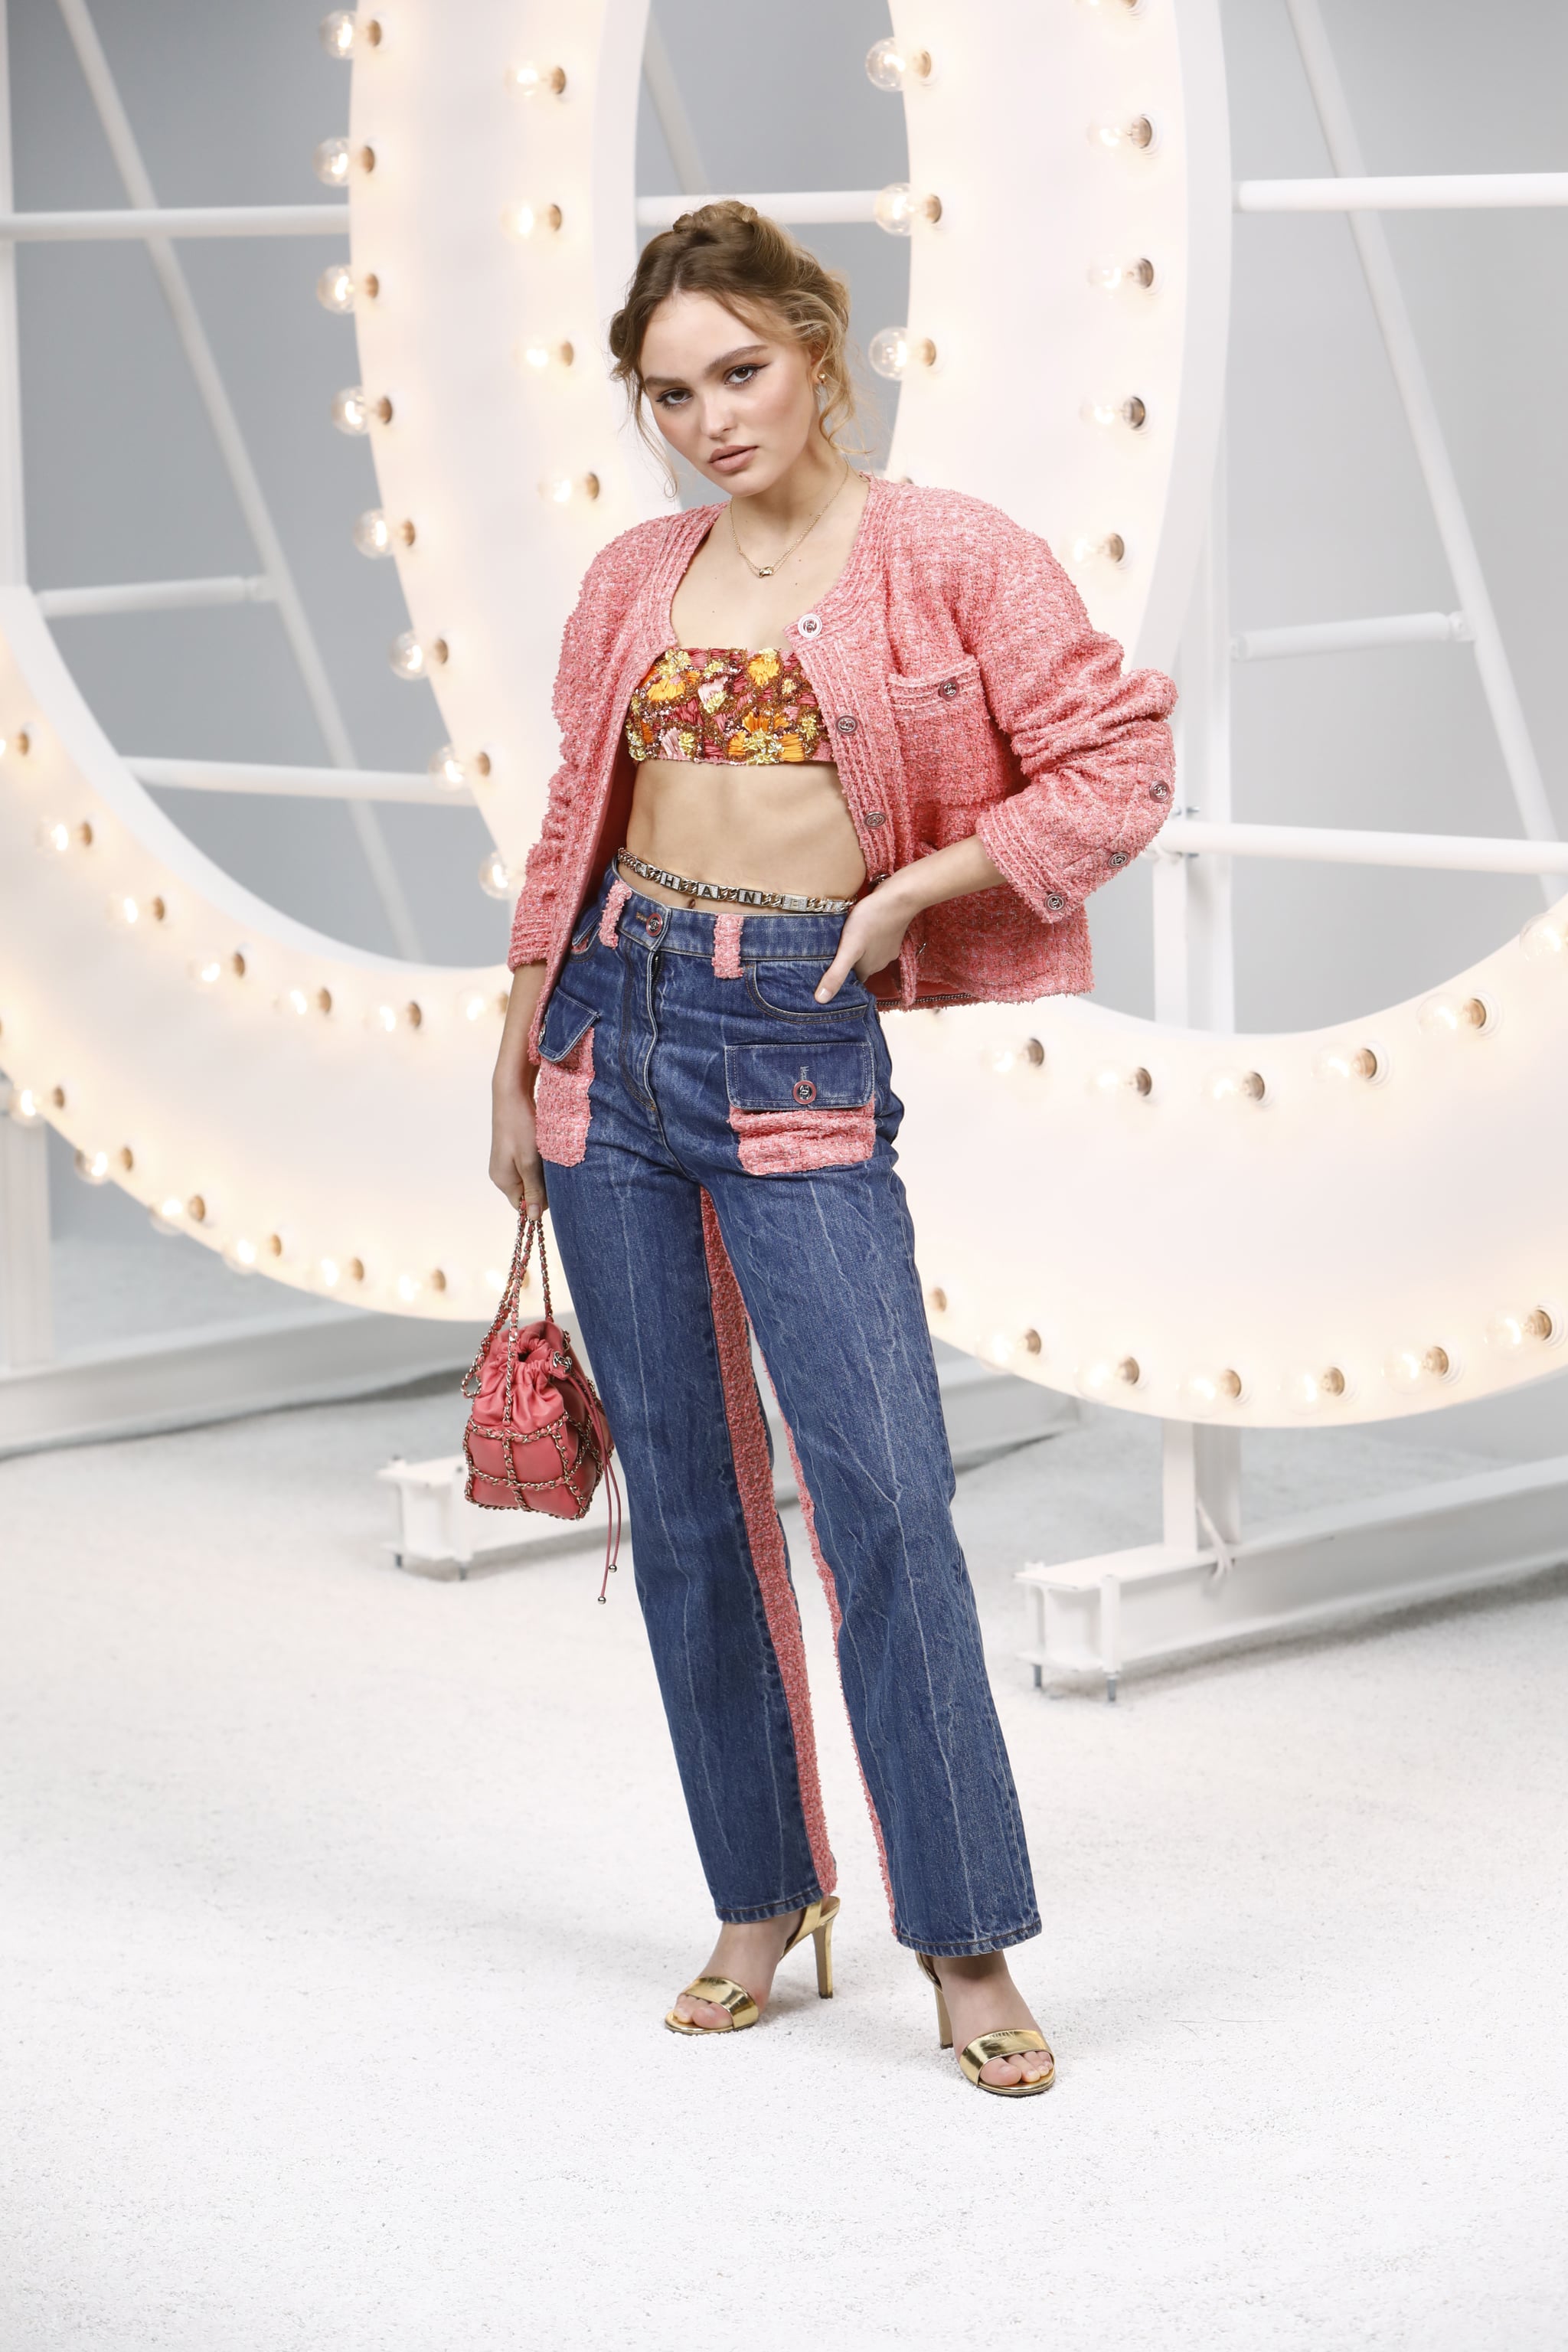 Underholde fløjl Anholdelse Lily-Rose Depp's Outfit at the Spring 2021 Chanel Show | POPSUGAR Fashion